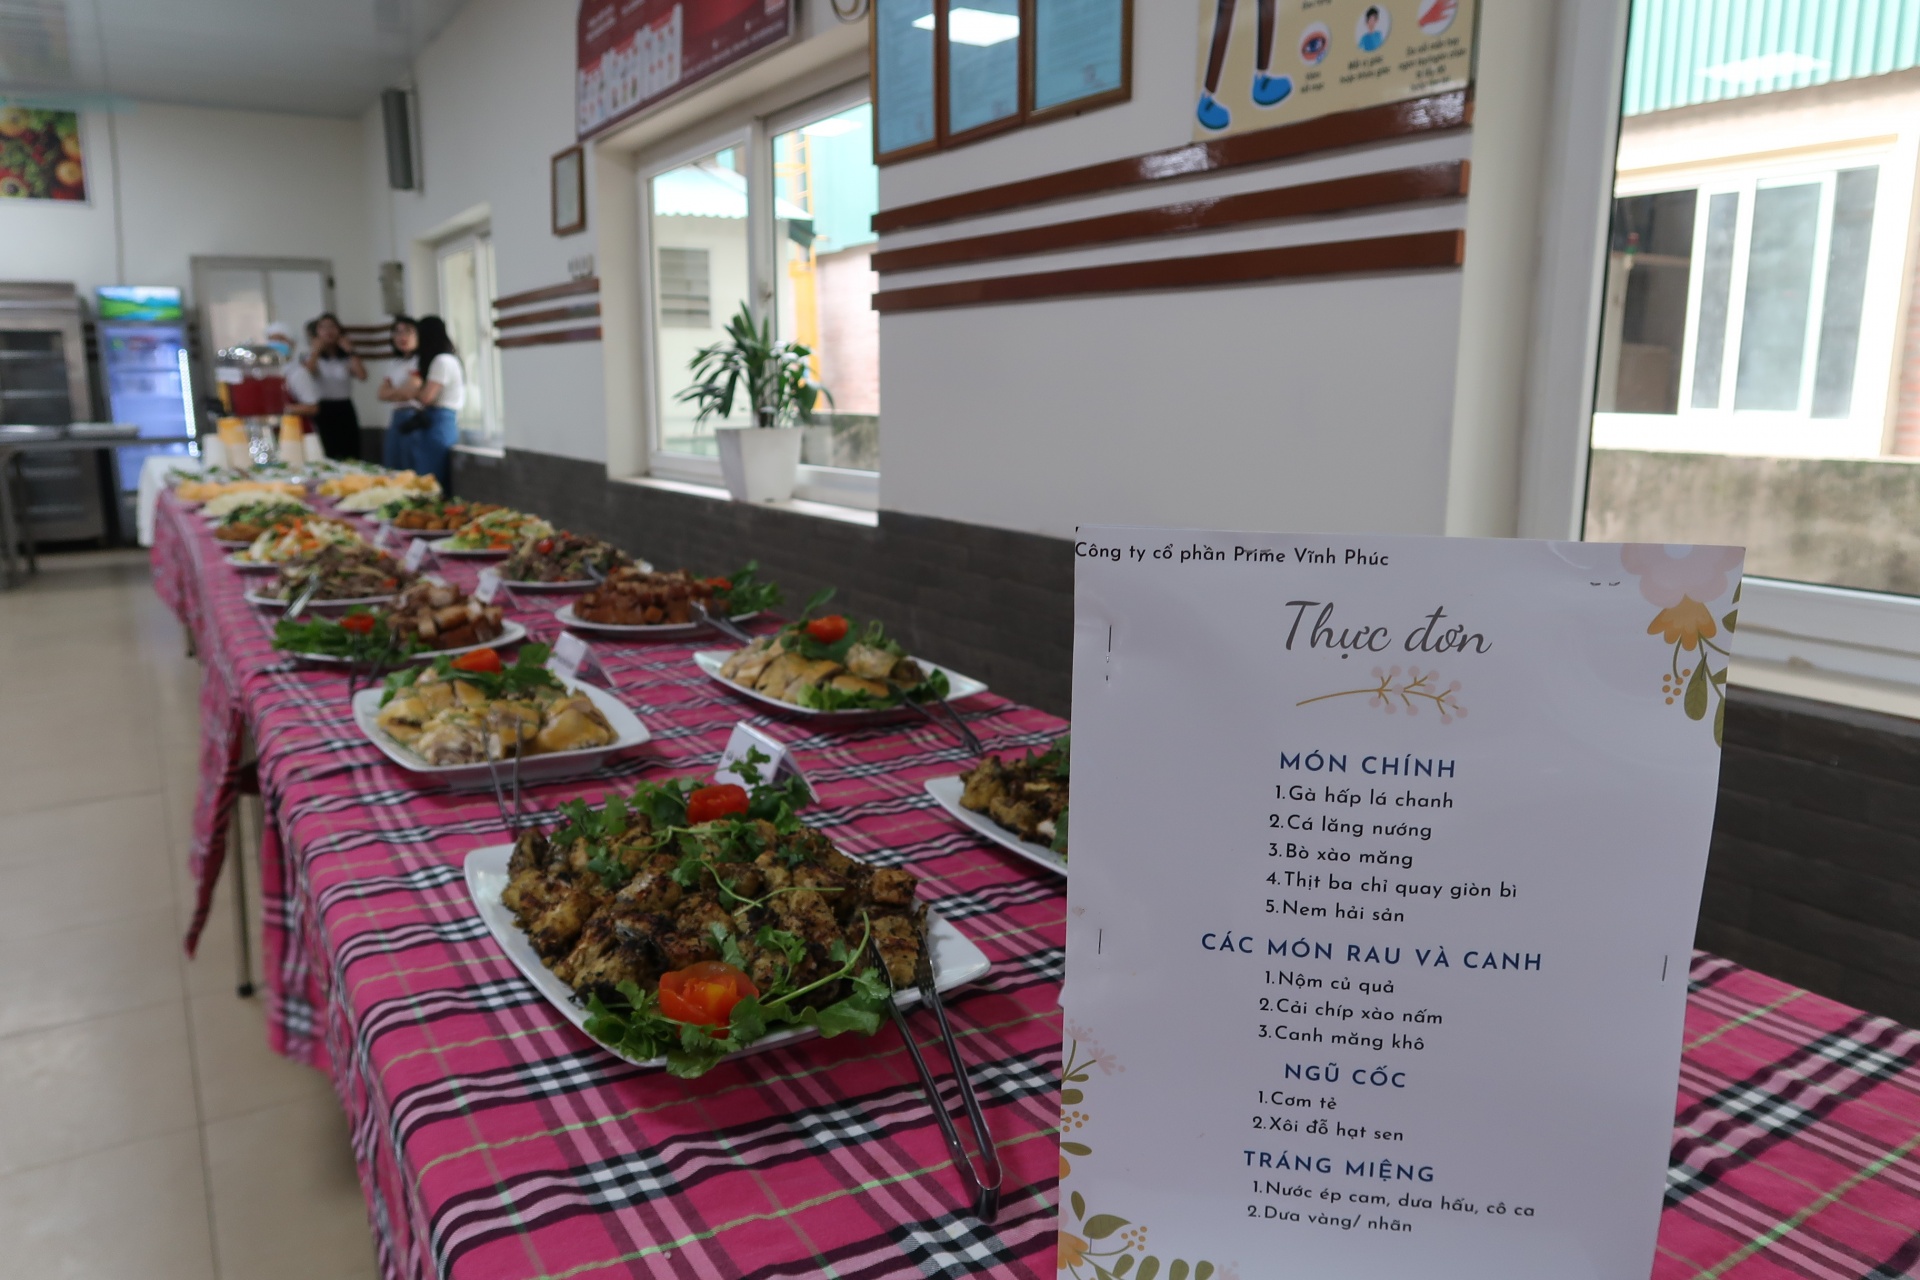 "Bữa cơm công đoàn" tại Công ty Cổ phần Prime Vĩnh Phúc: Tiệc buffe cho người lao động